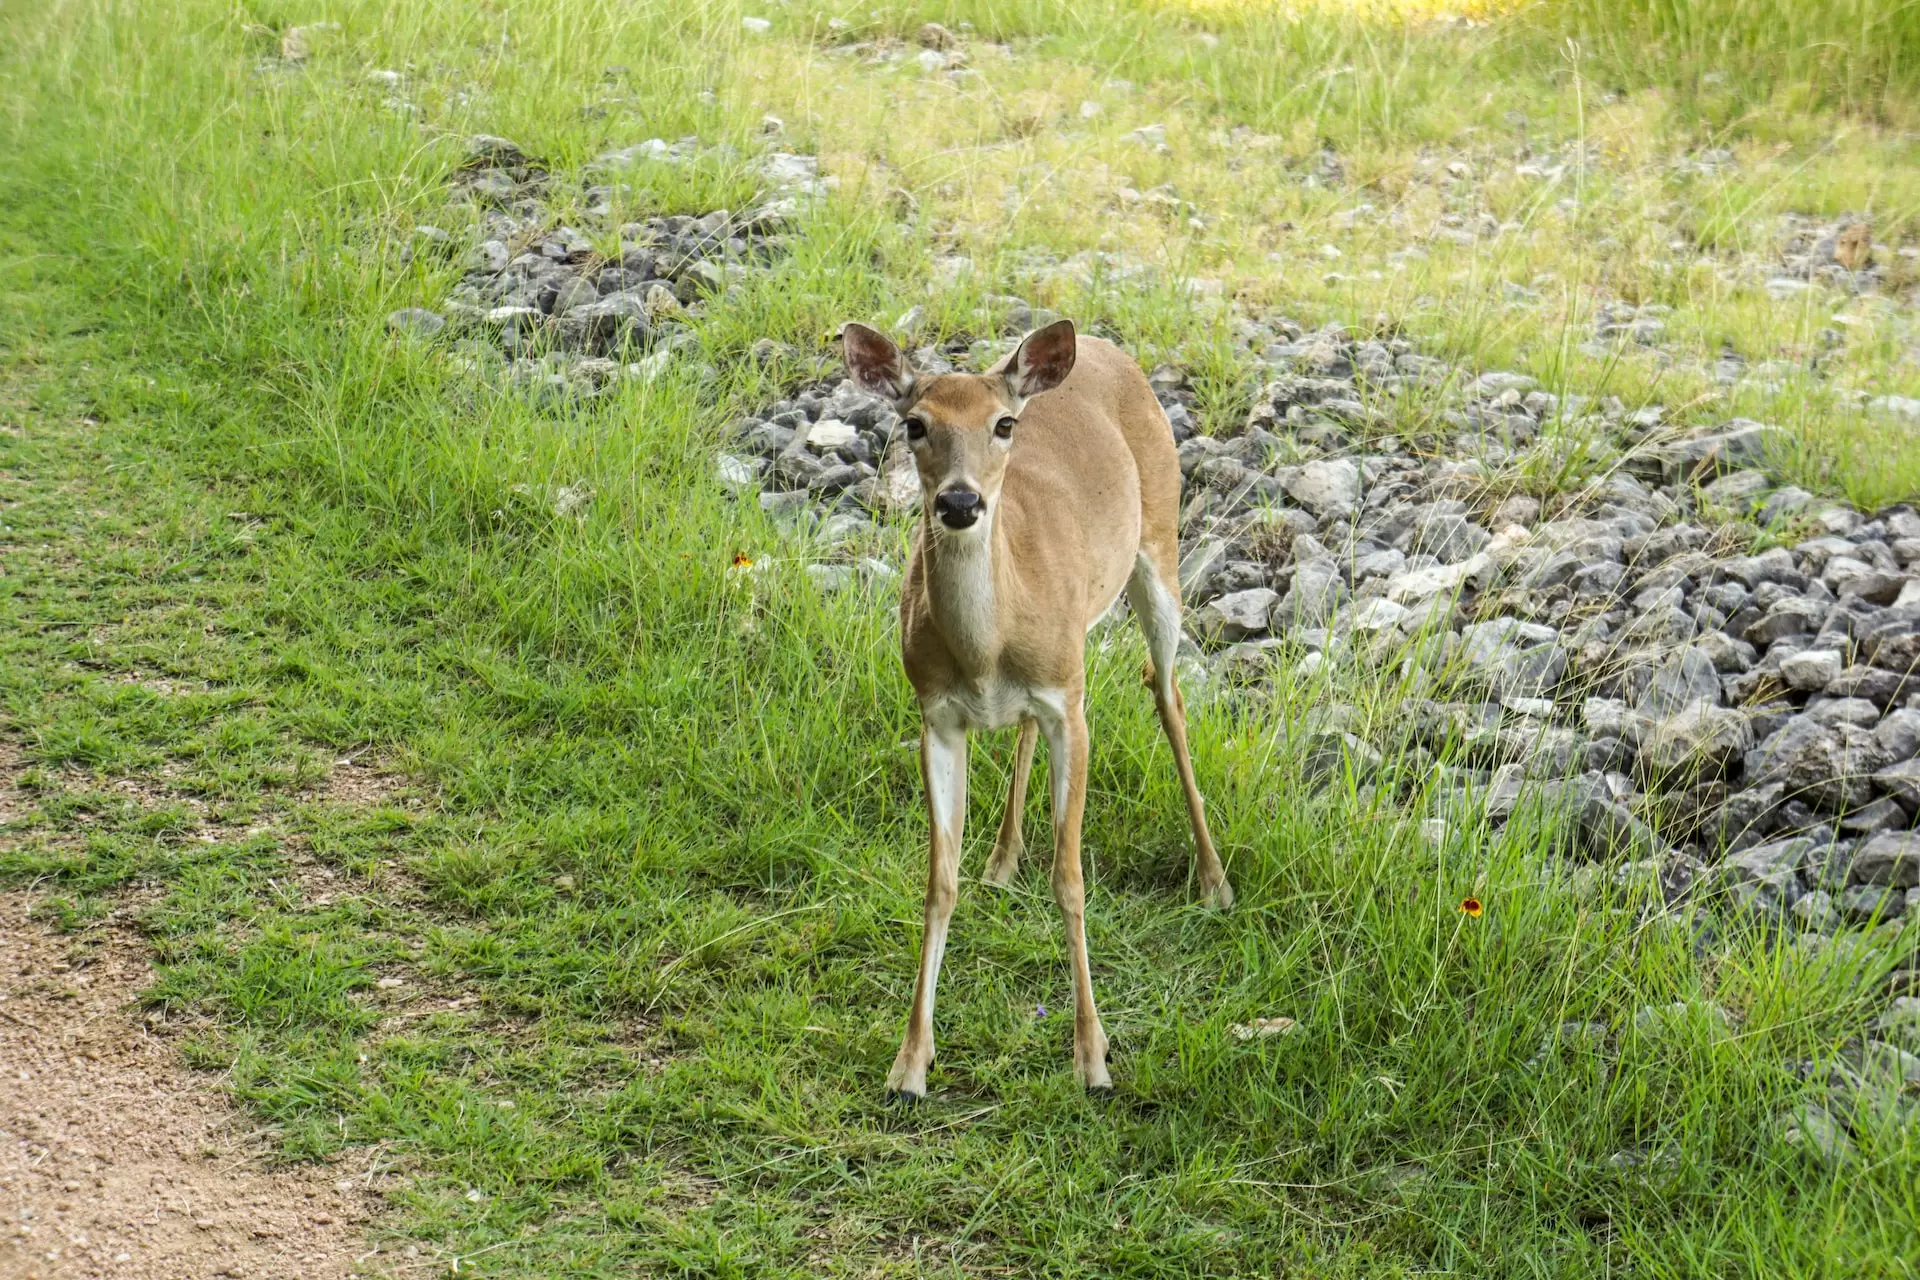 deer at the park near Buda Texas